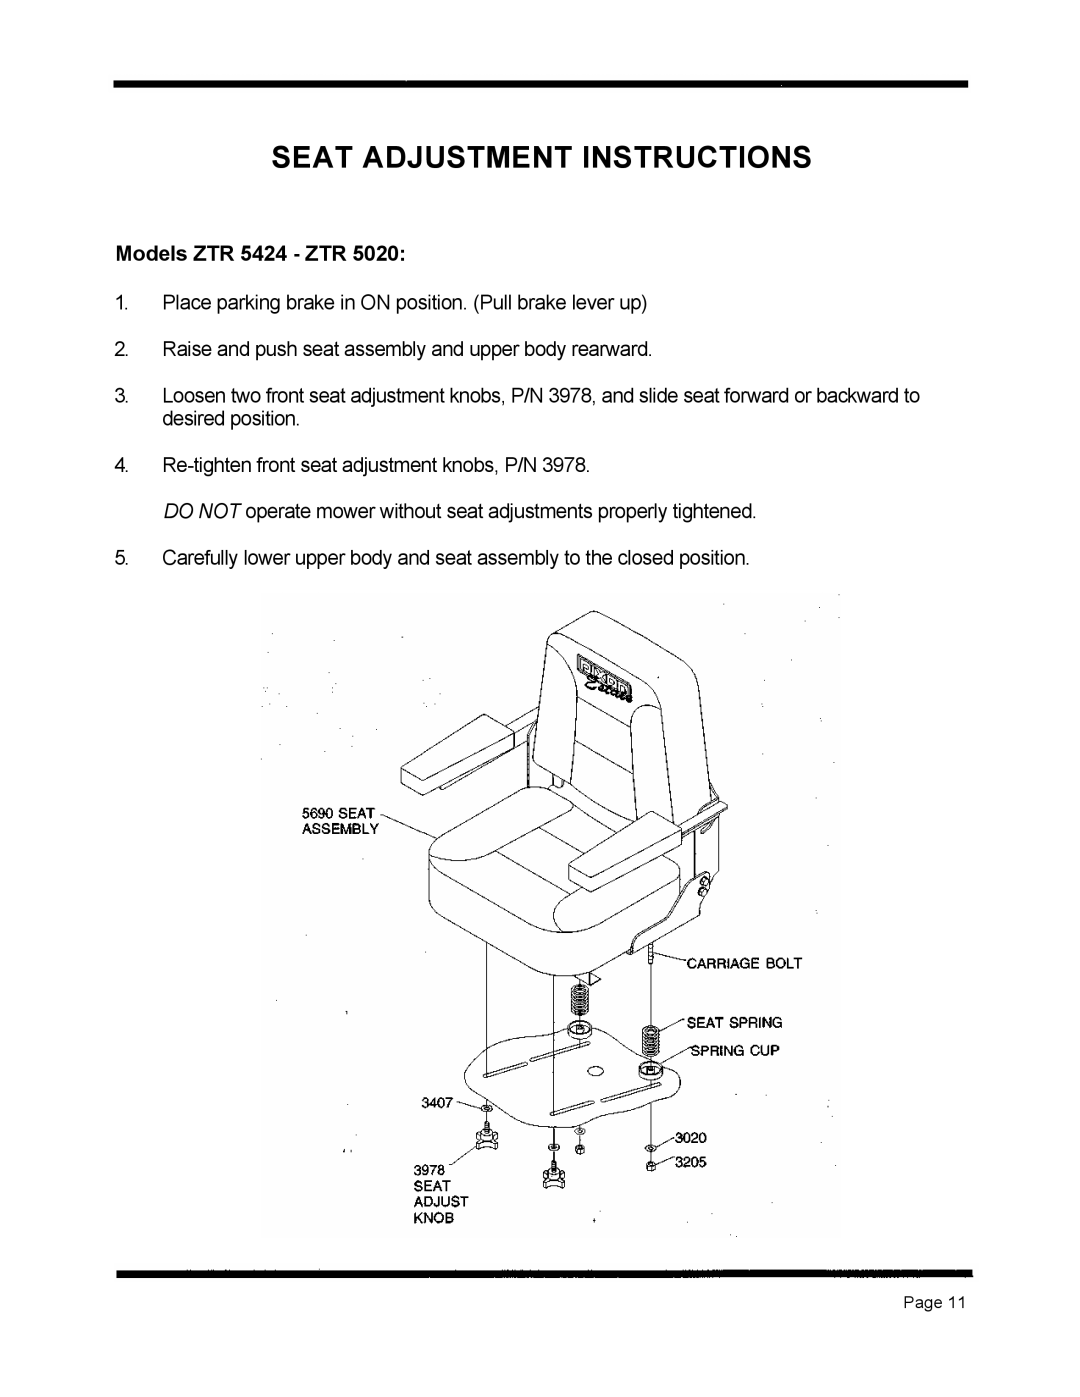 Dixon ZTR 5020 manual Seat Adjustment Instructions, Models ZTR 5424 - ZTR 